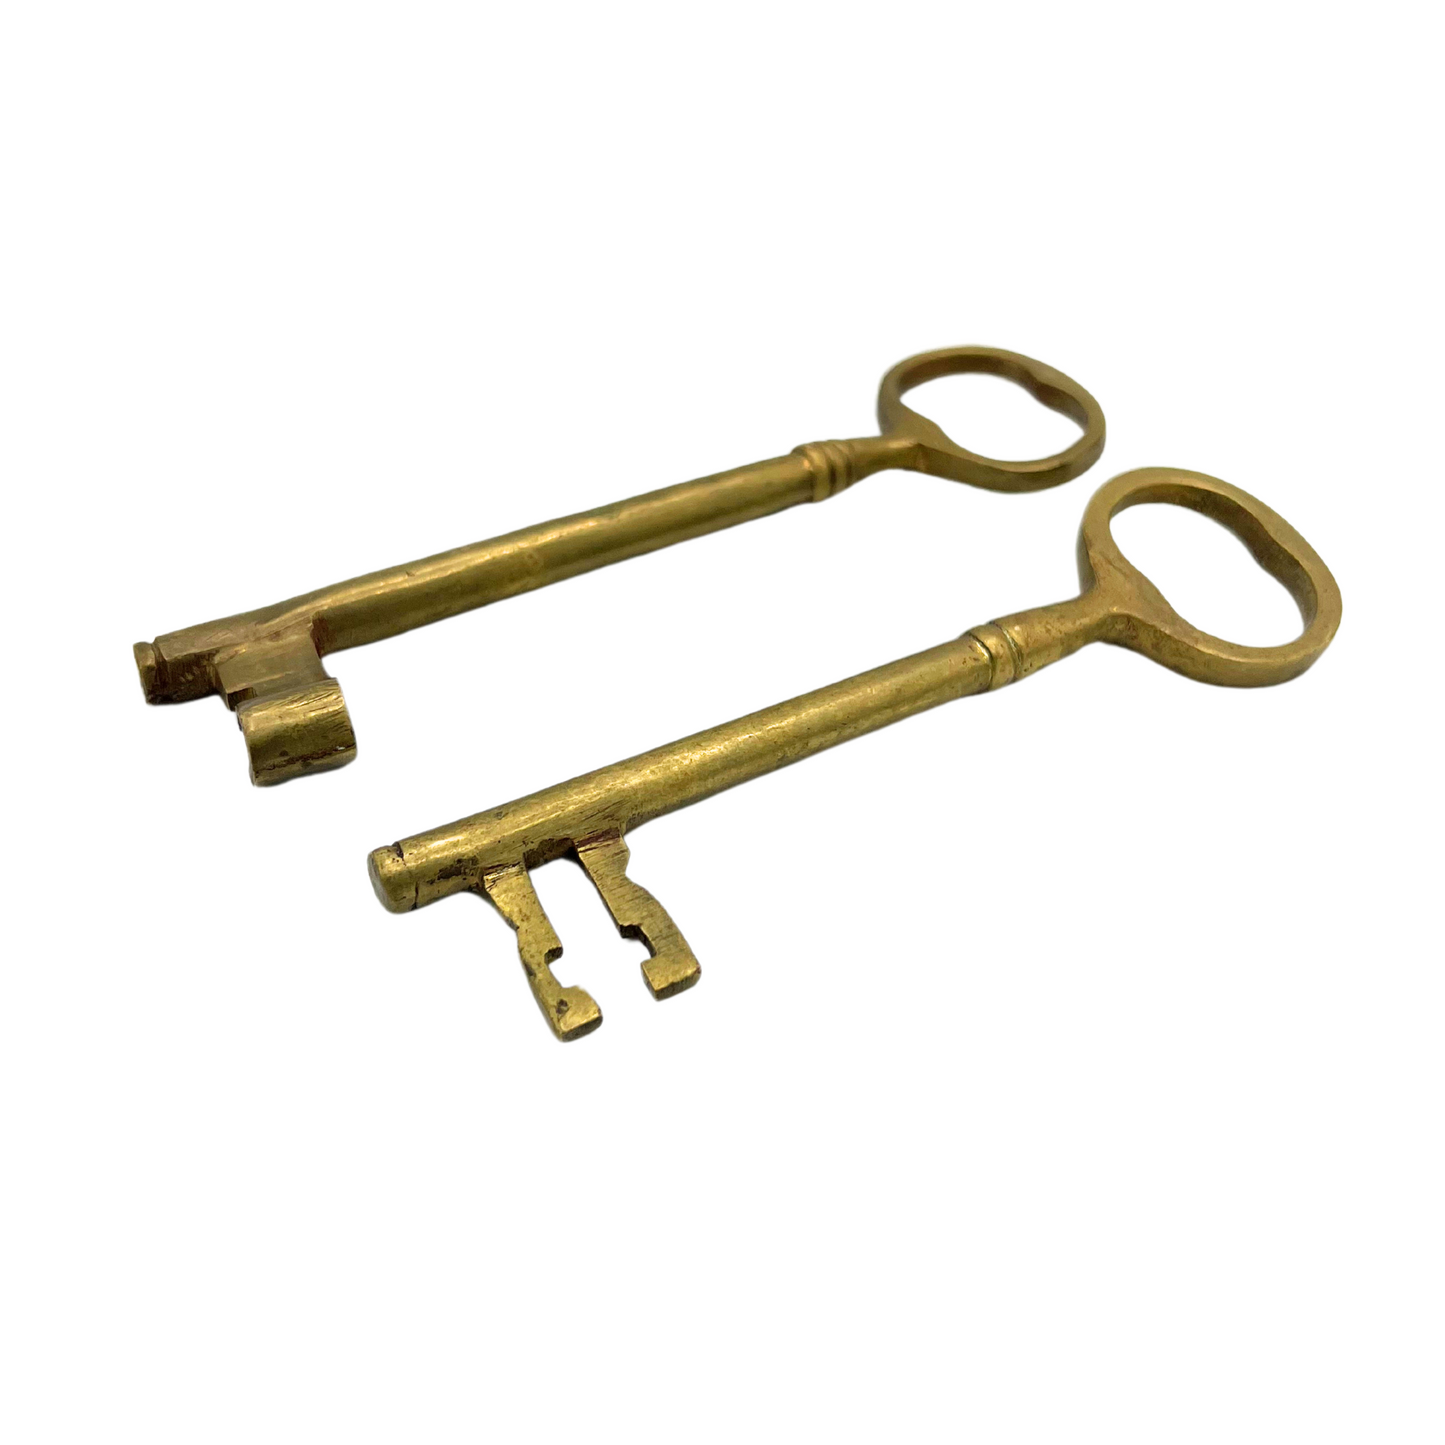 pair of vintage brass keys